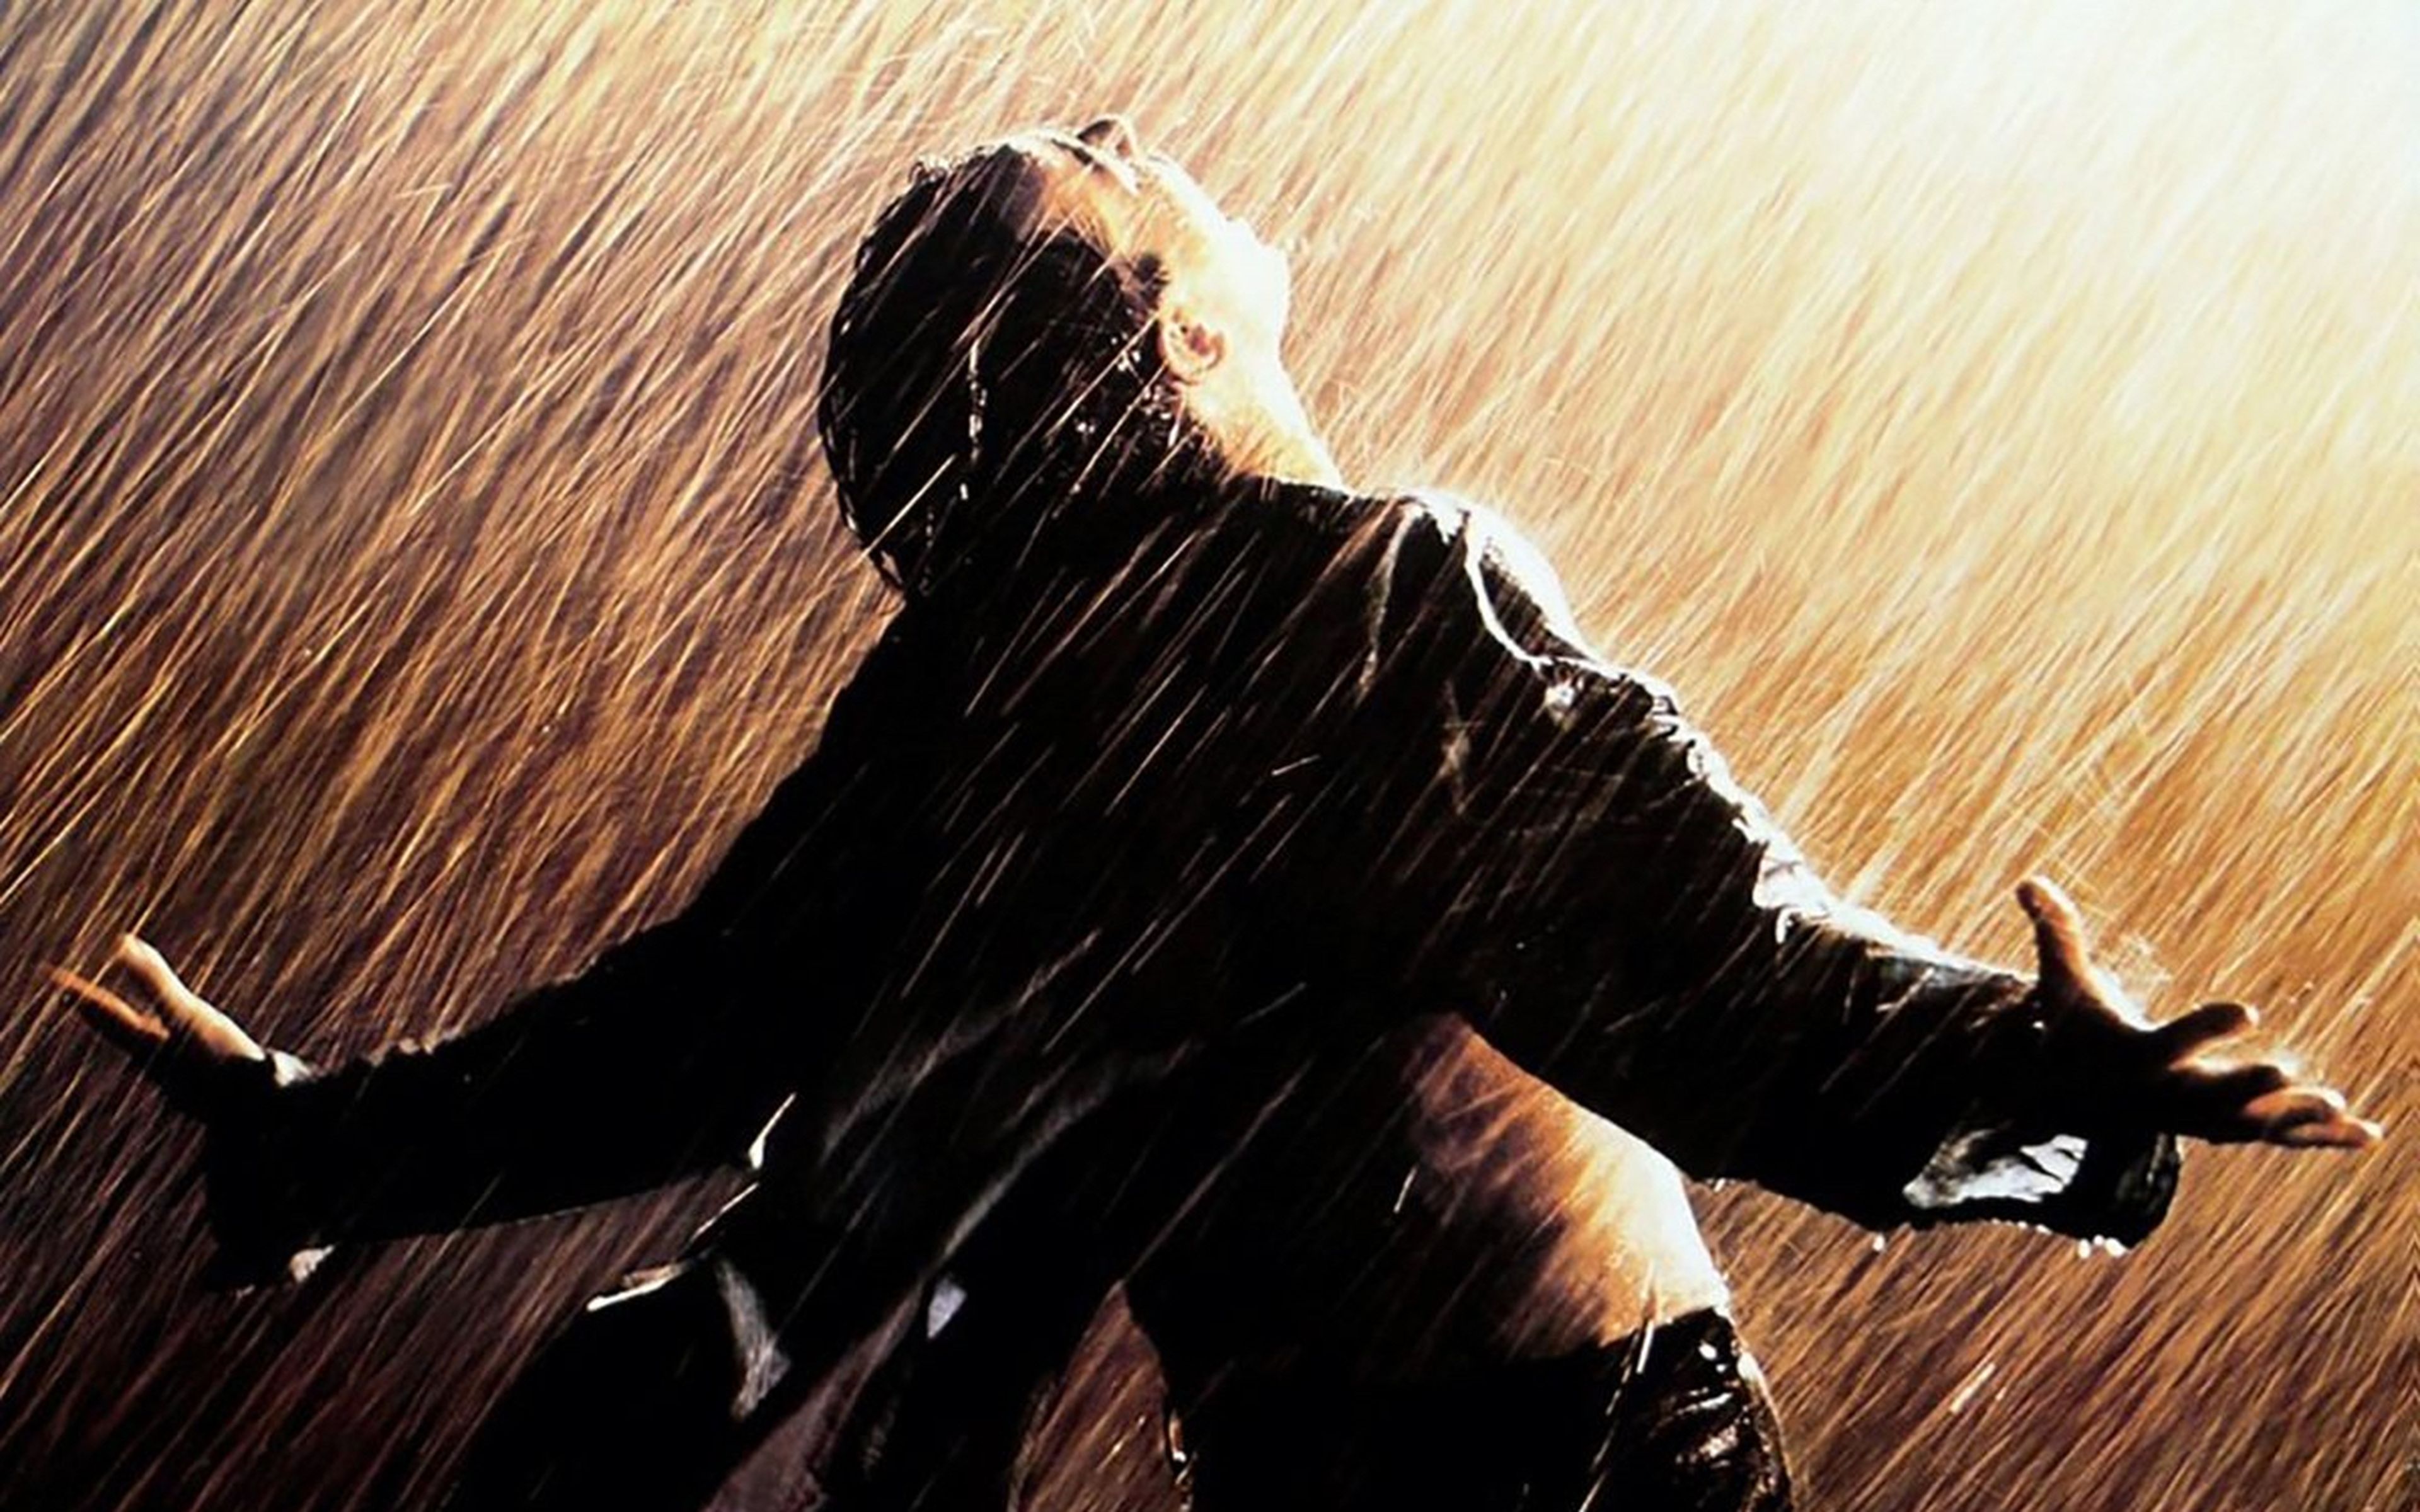 Уходя уходи поет мужчина. Побег из Шоушенка под дождем. Побег из Шоушенка дождь. Побег из Шоушенка Энди Дюфрейн. Энди Дюфрейн под дождем.